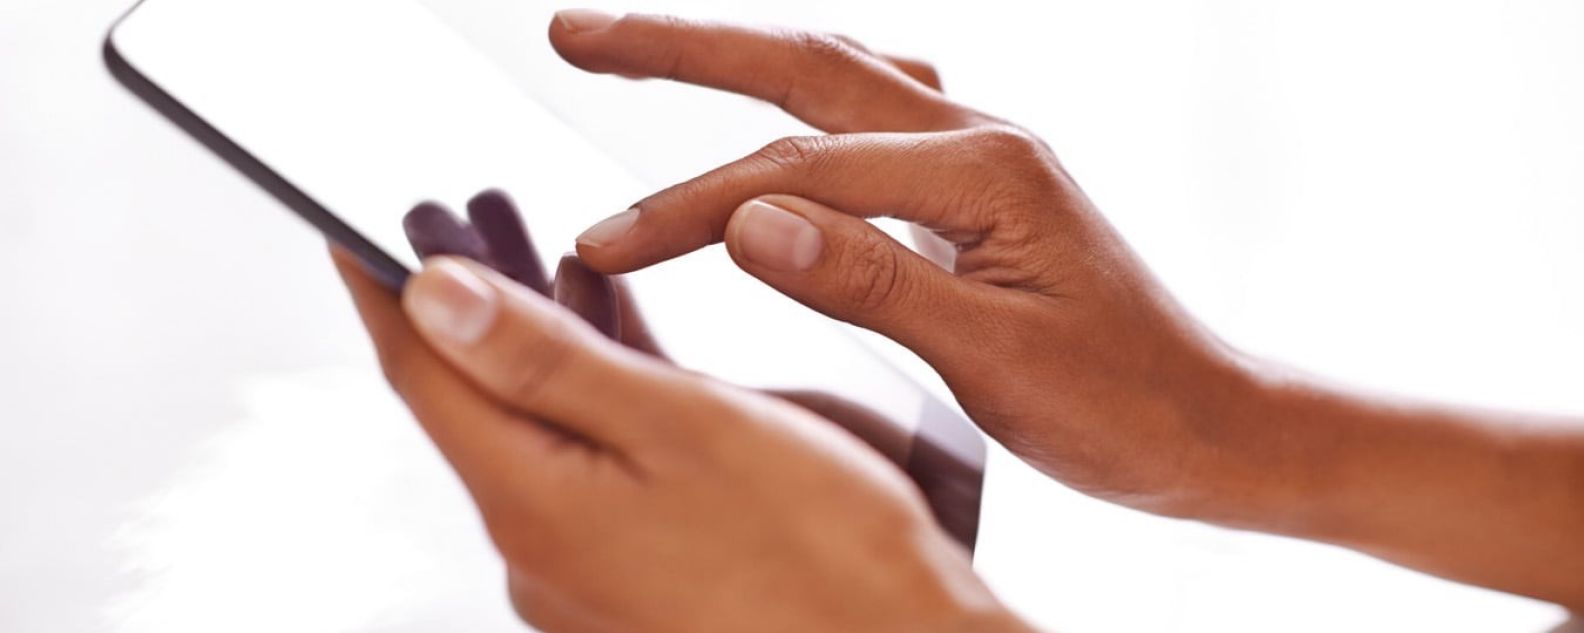 Primer plano de un dedo tocando la pantalla de una tableta